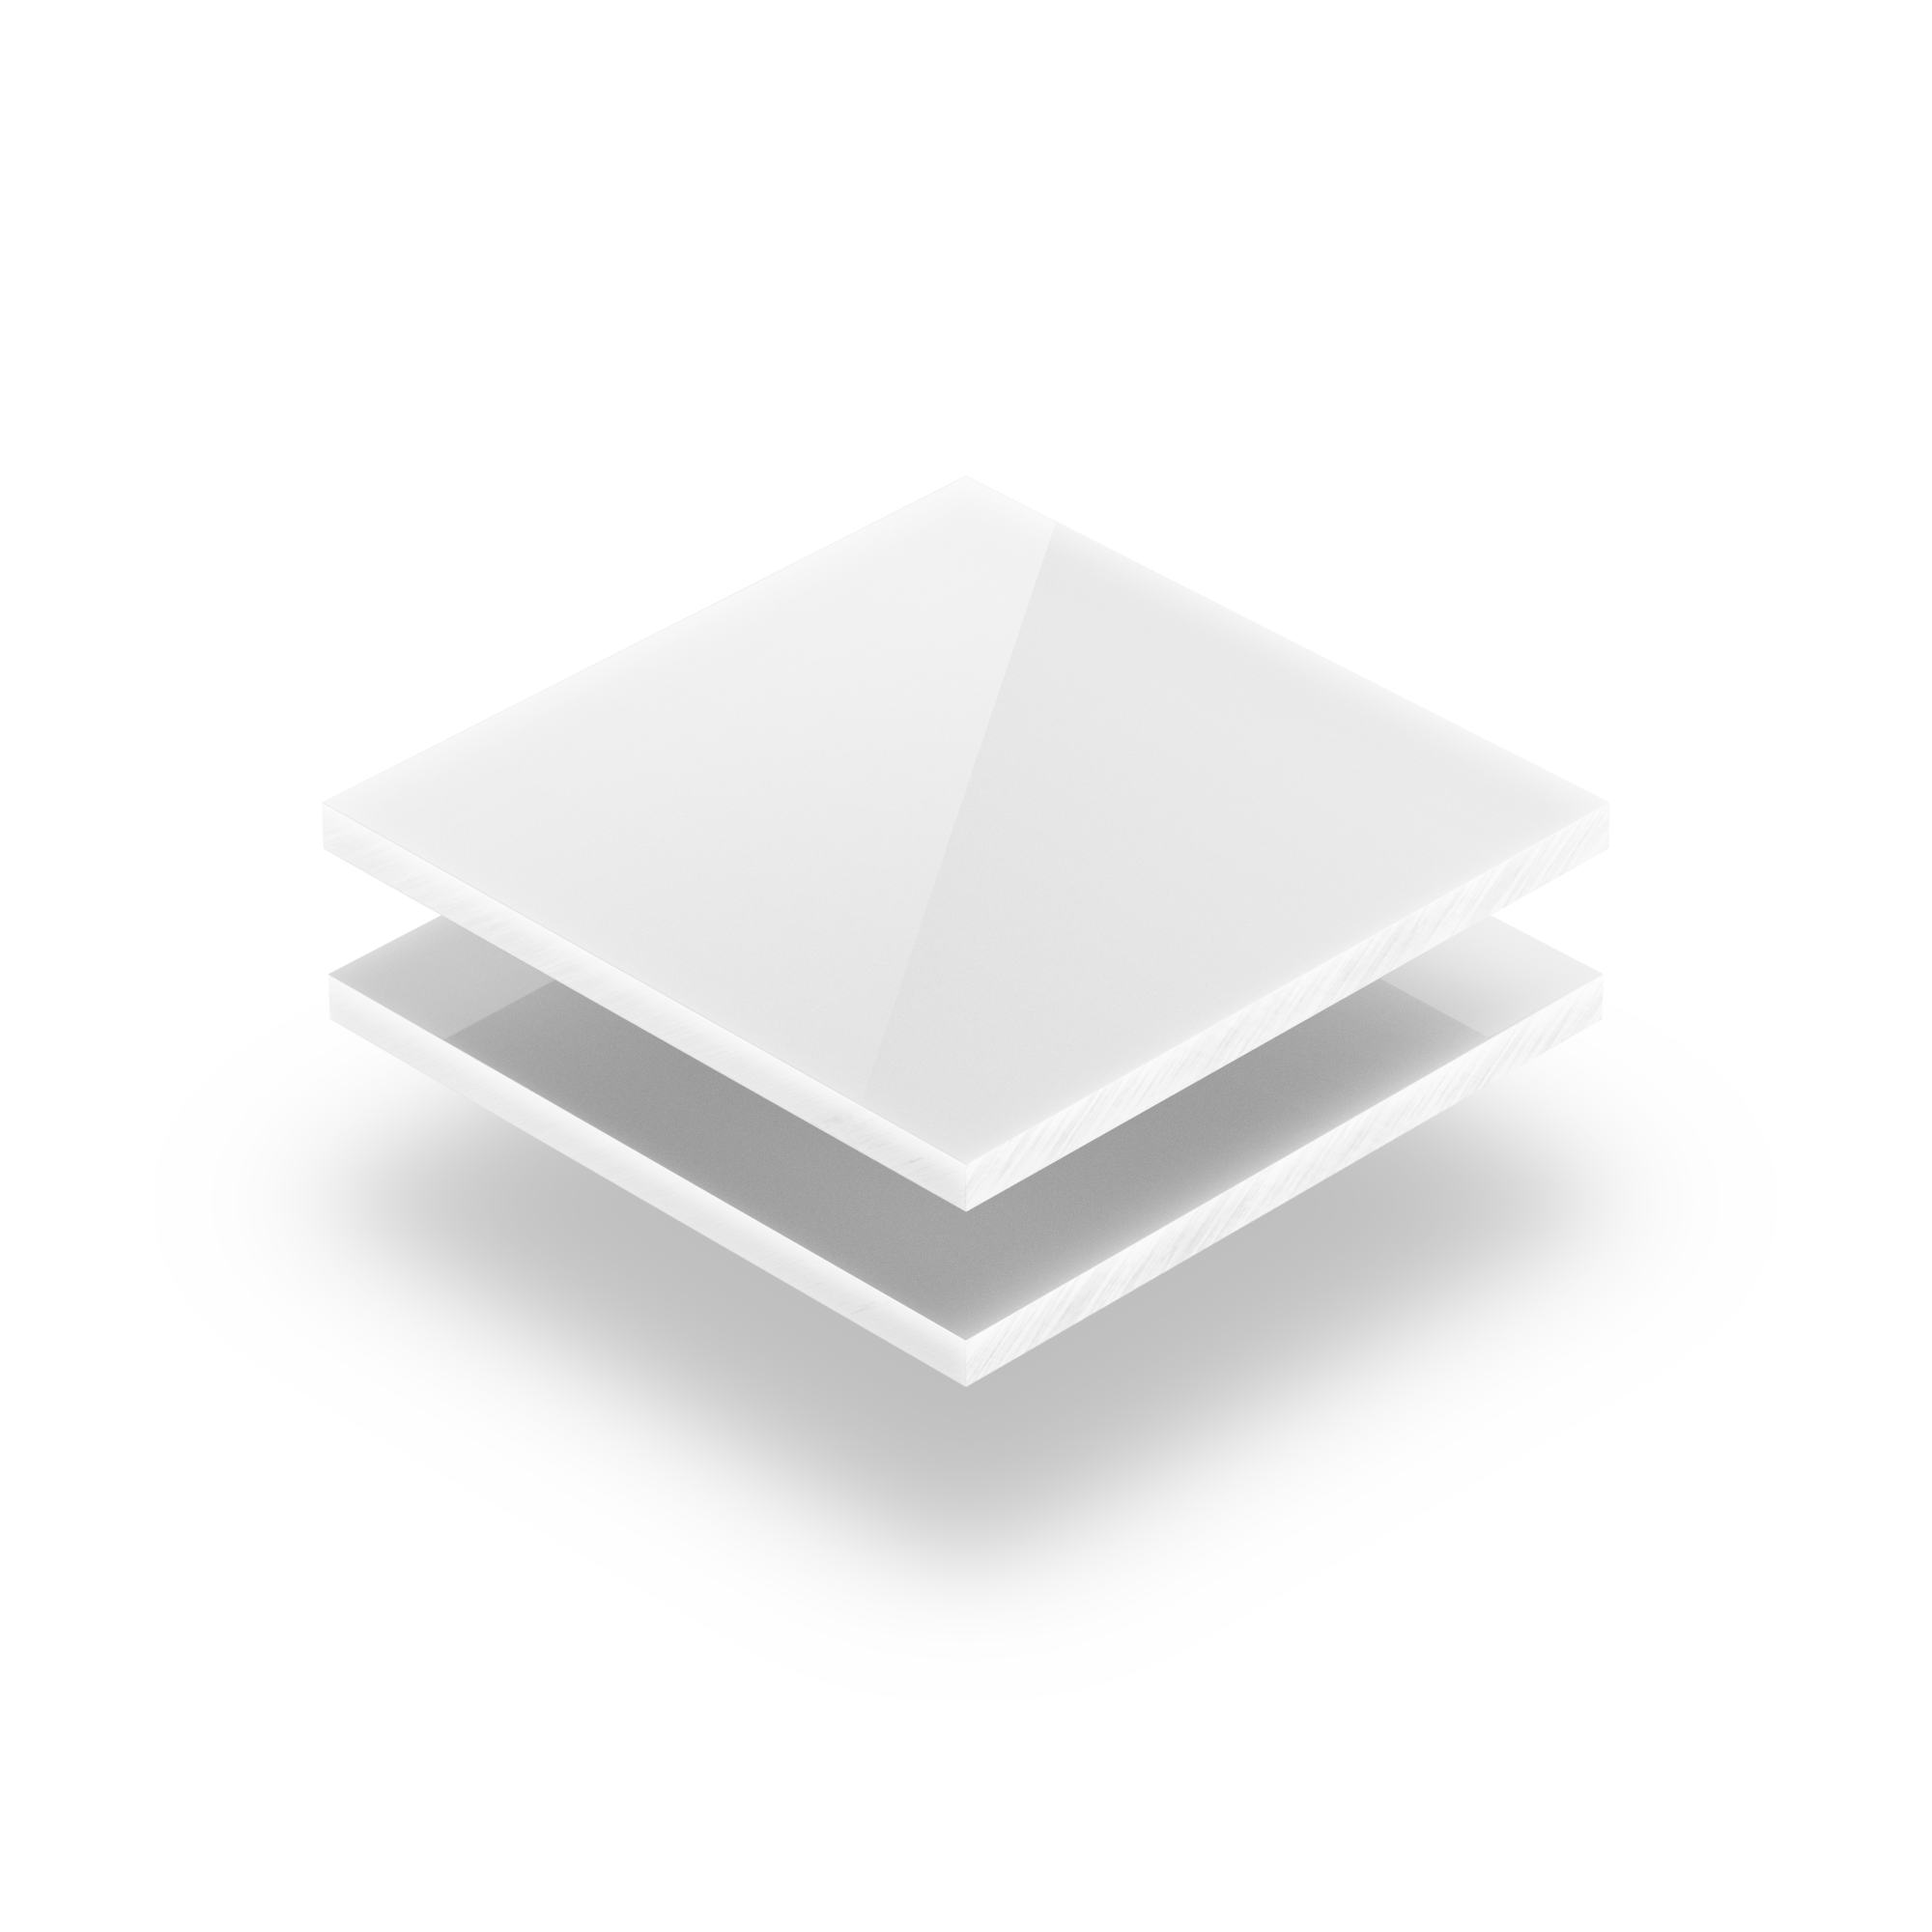 White Opal Acrylic Sheet 8 Mm | Plasticsheetsshop.Co.Uk